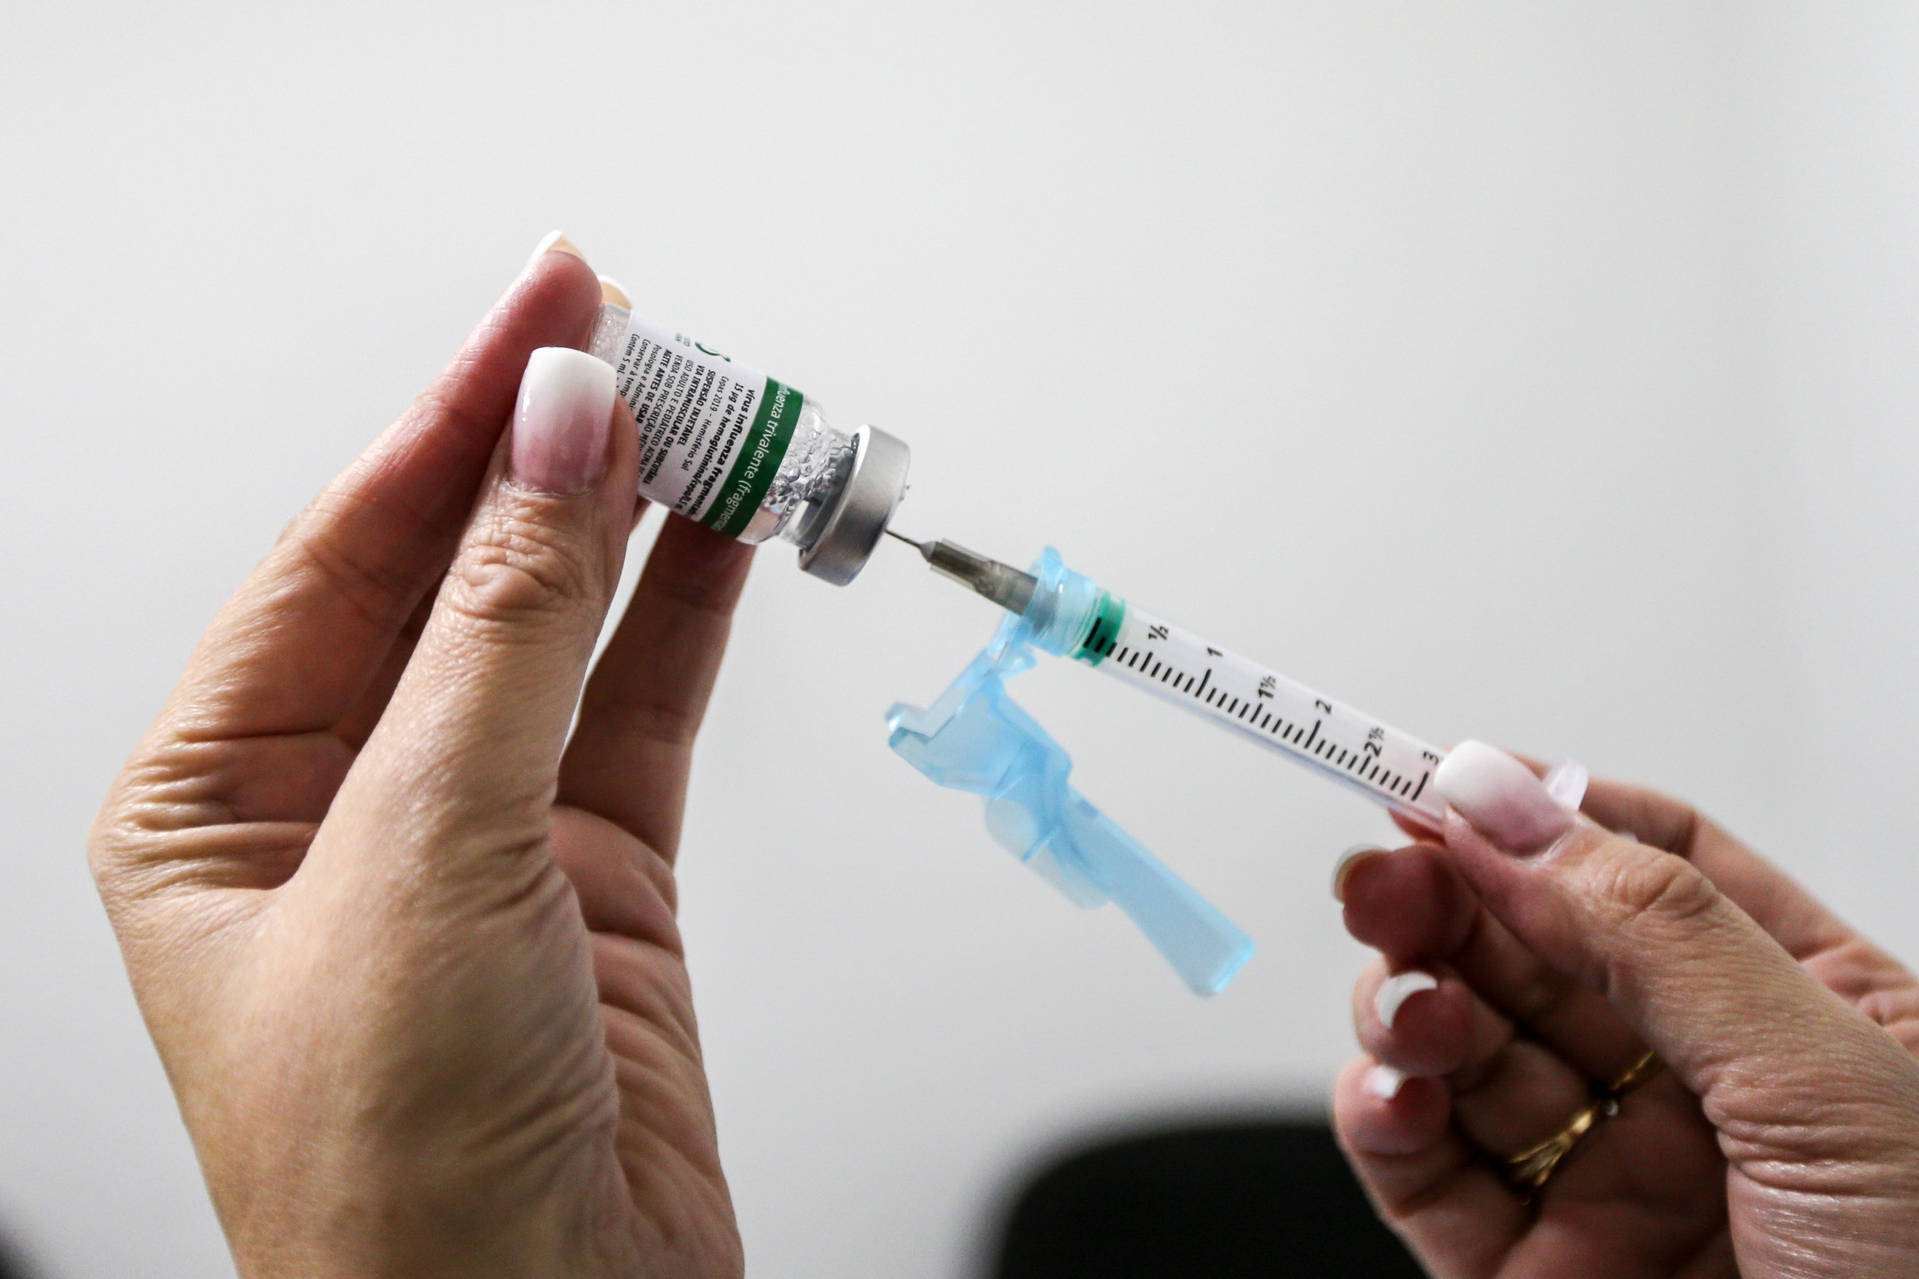  Saúde alerta sobre perigo da desinformação sobre vacinas